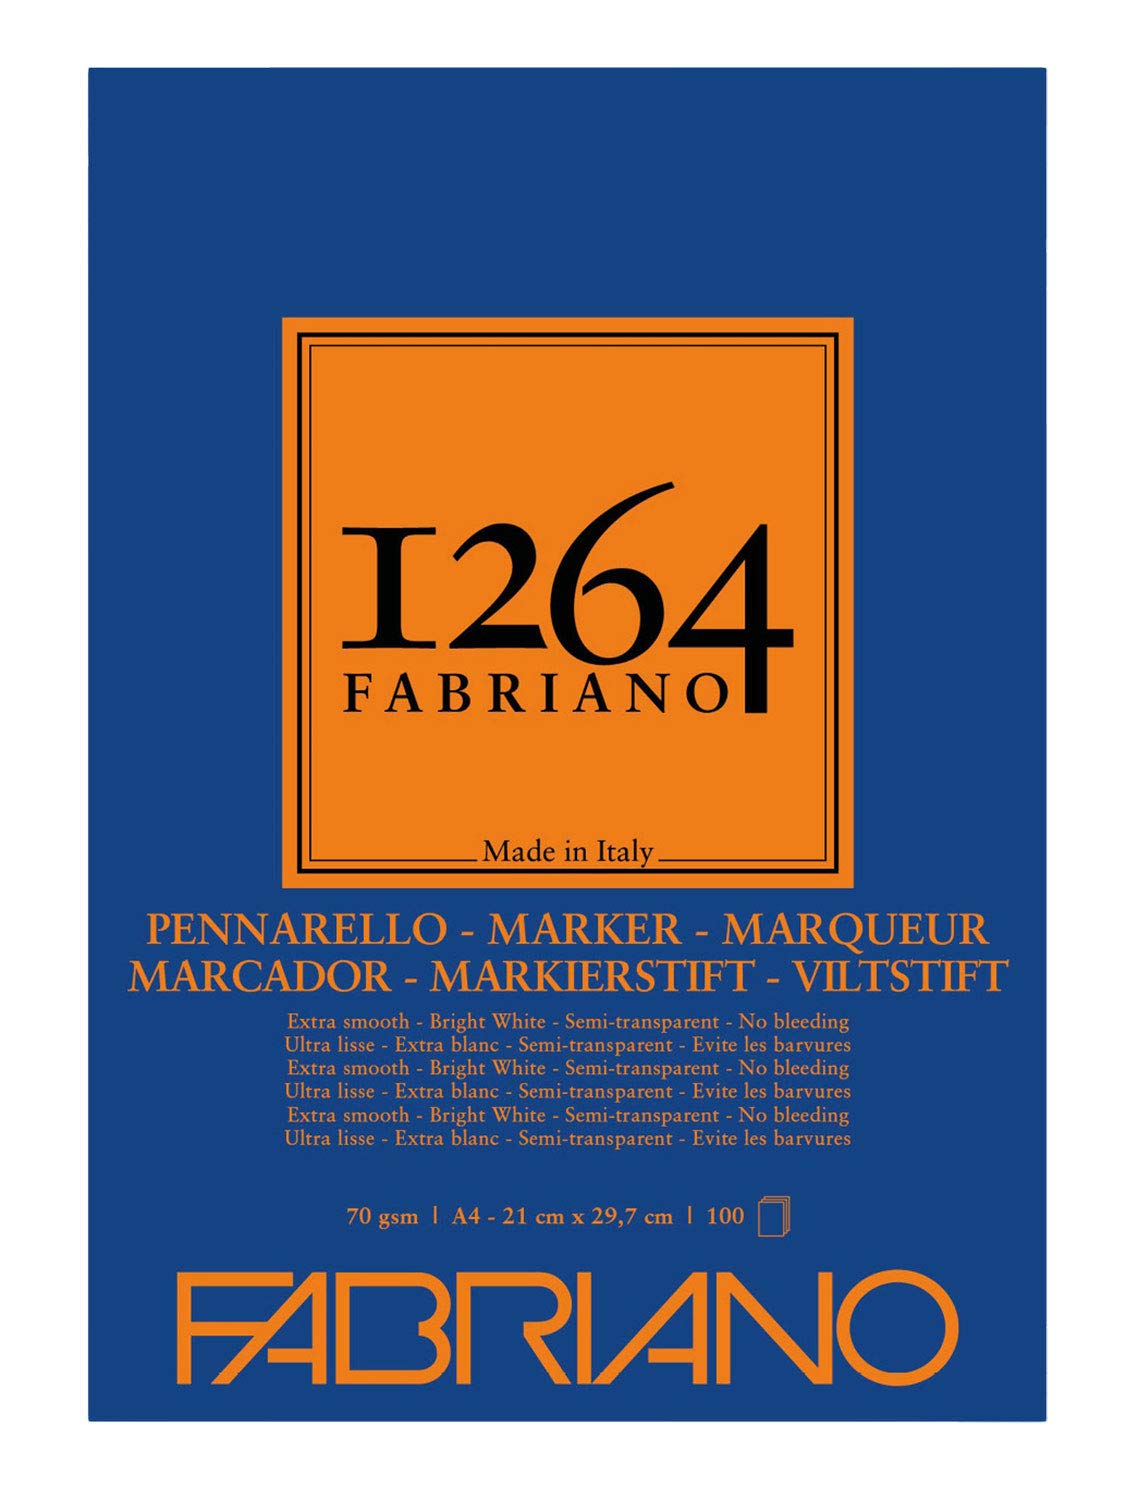 Marker 1264 Fabriano